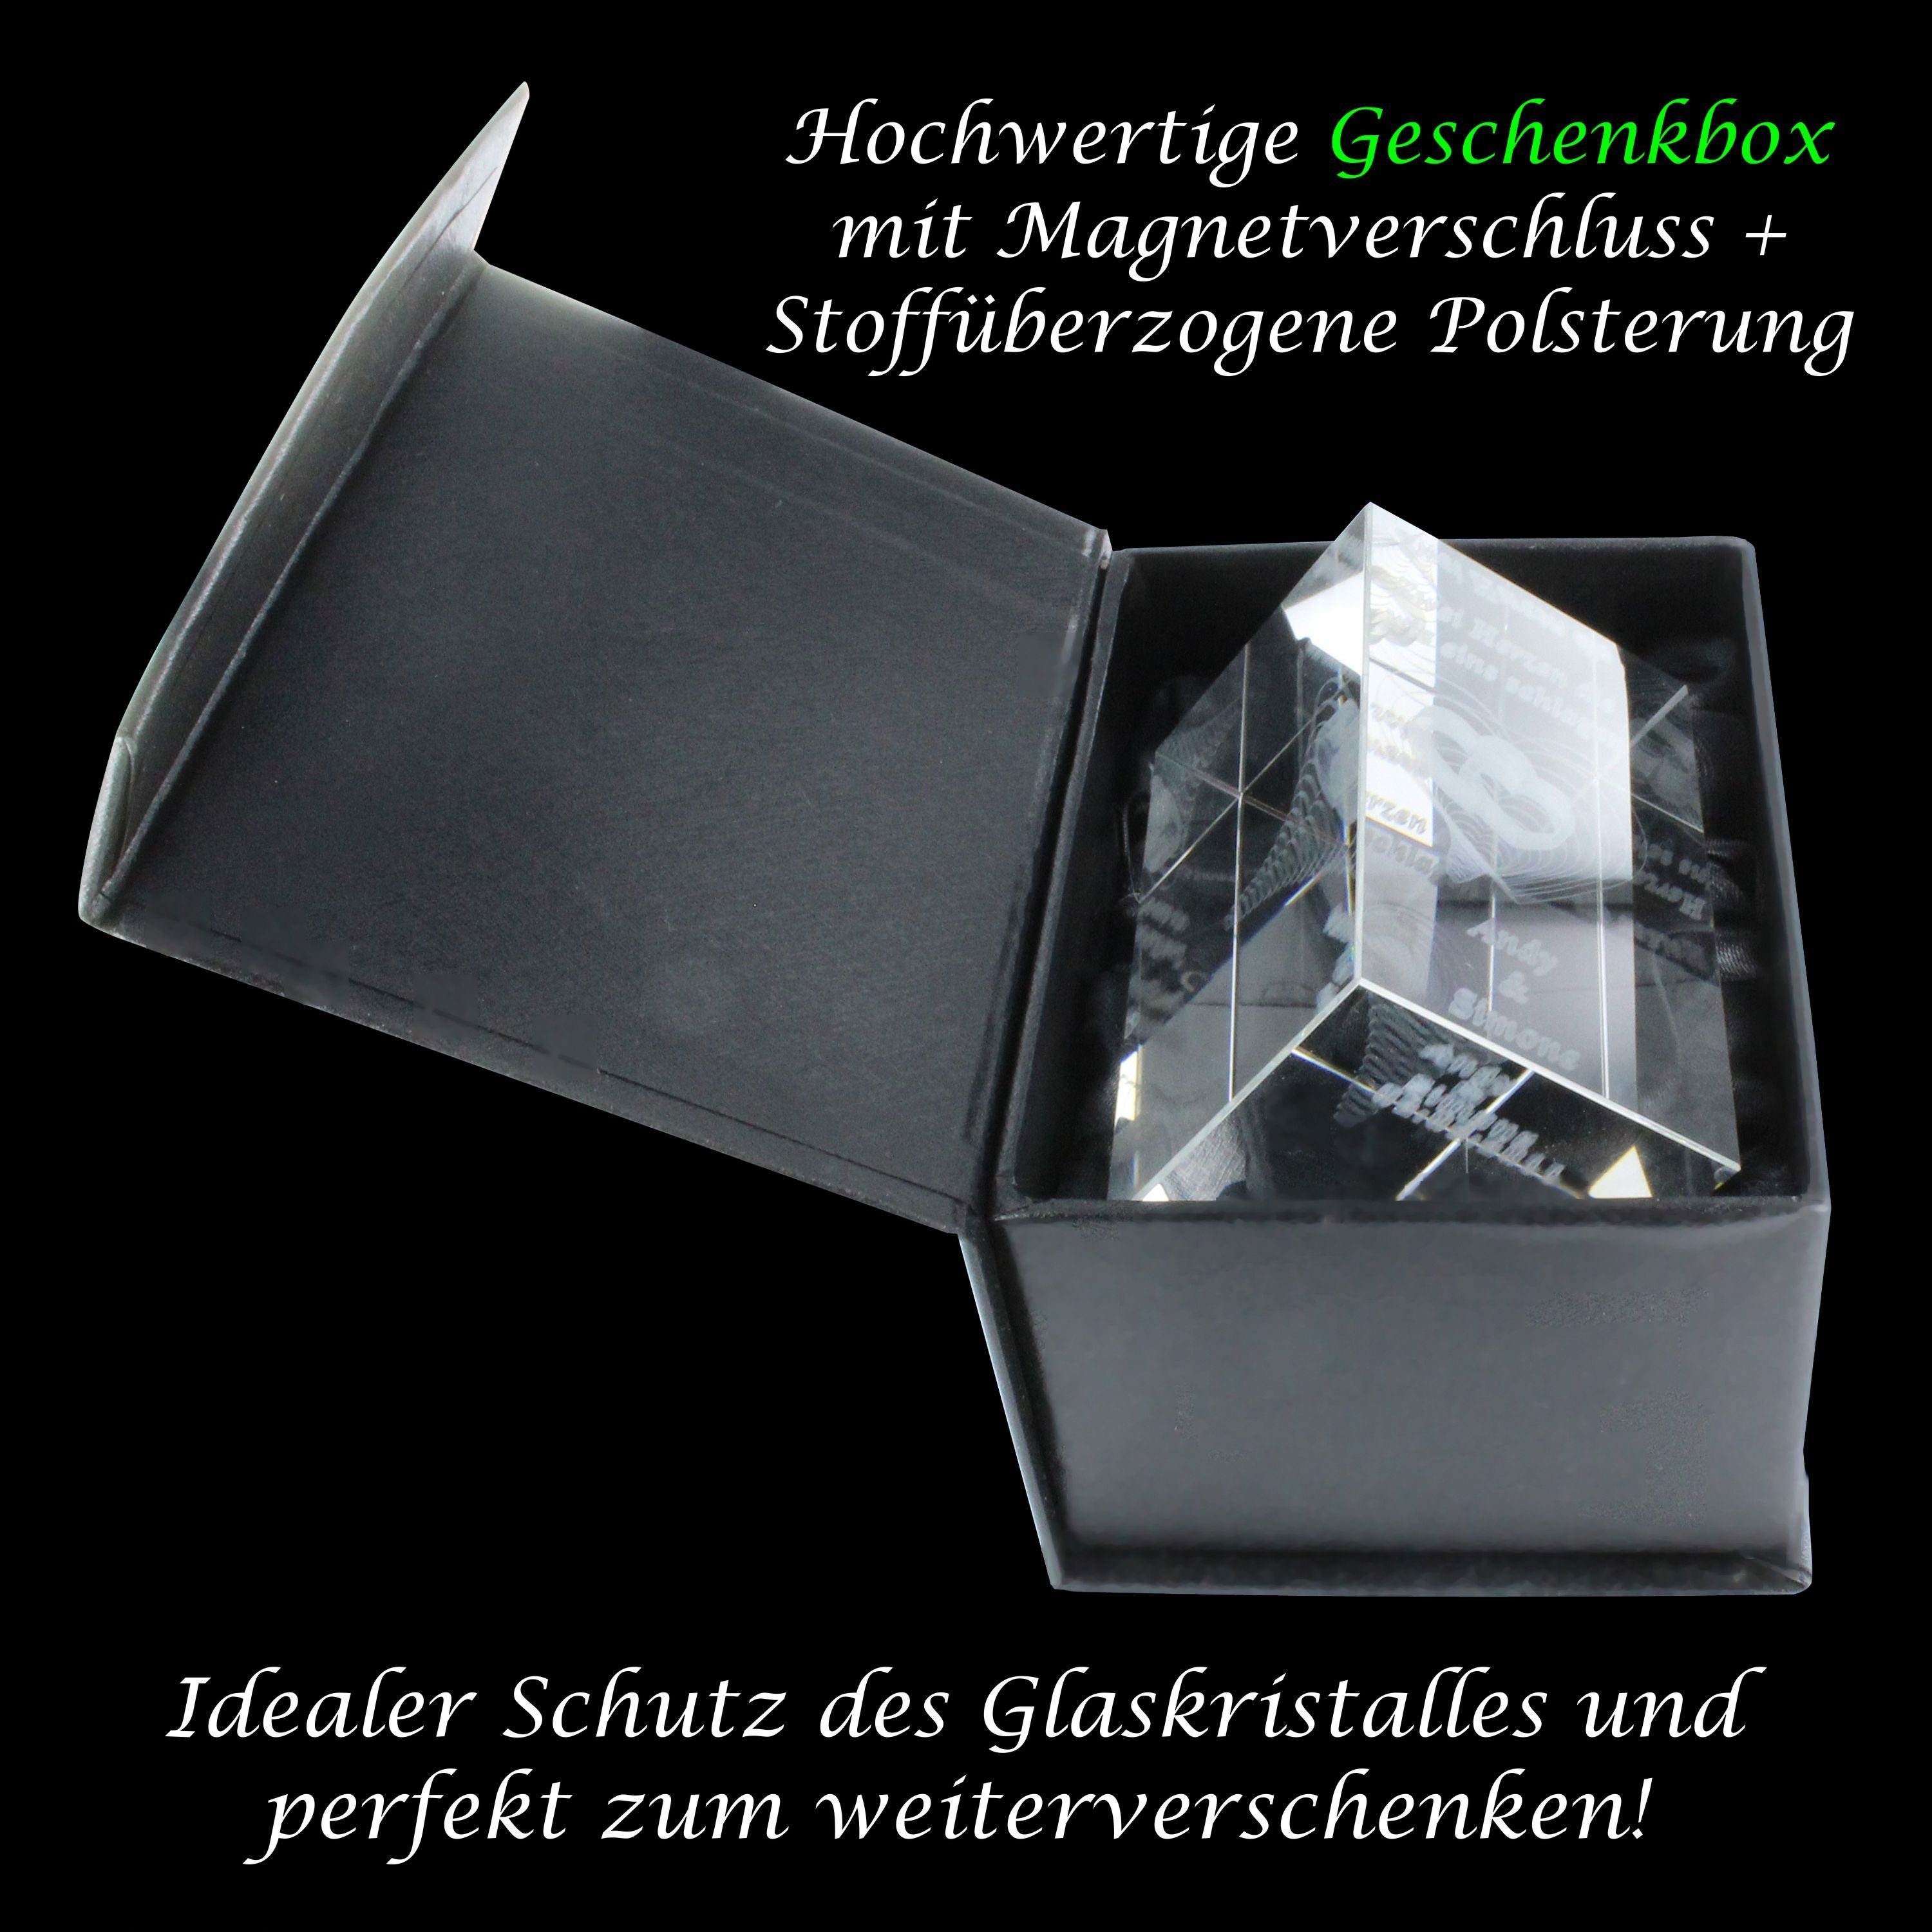 VIP-LASER Dekofigur VIP-LASER Germany, Geschenkbox, in Familienbetrieb I Glaskristall Handgranate Made 3D Gravur Explosiv, : Achtung I Hochwertige